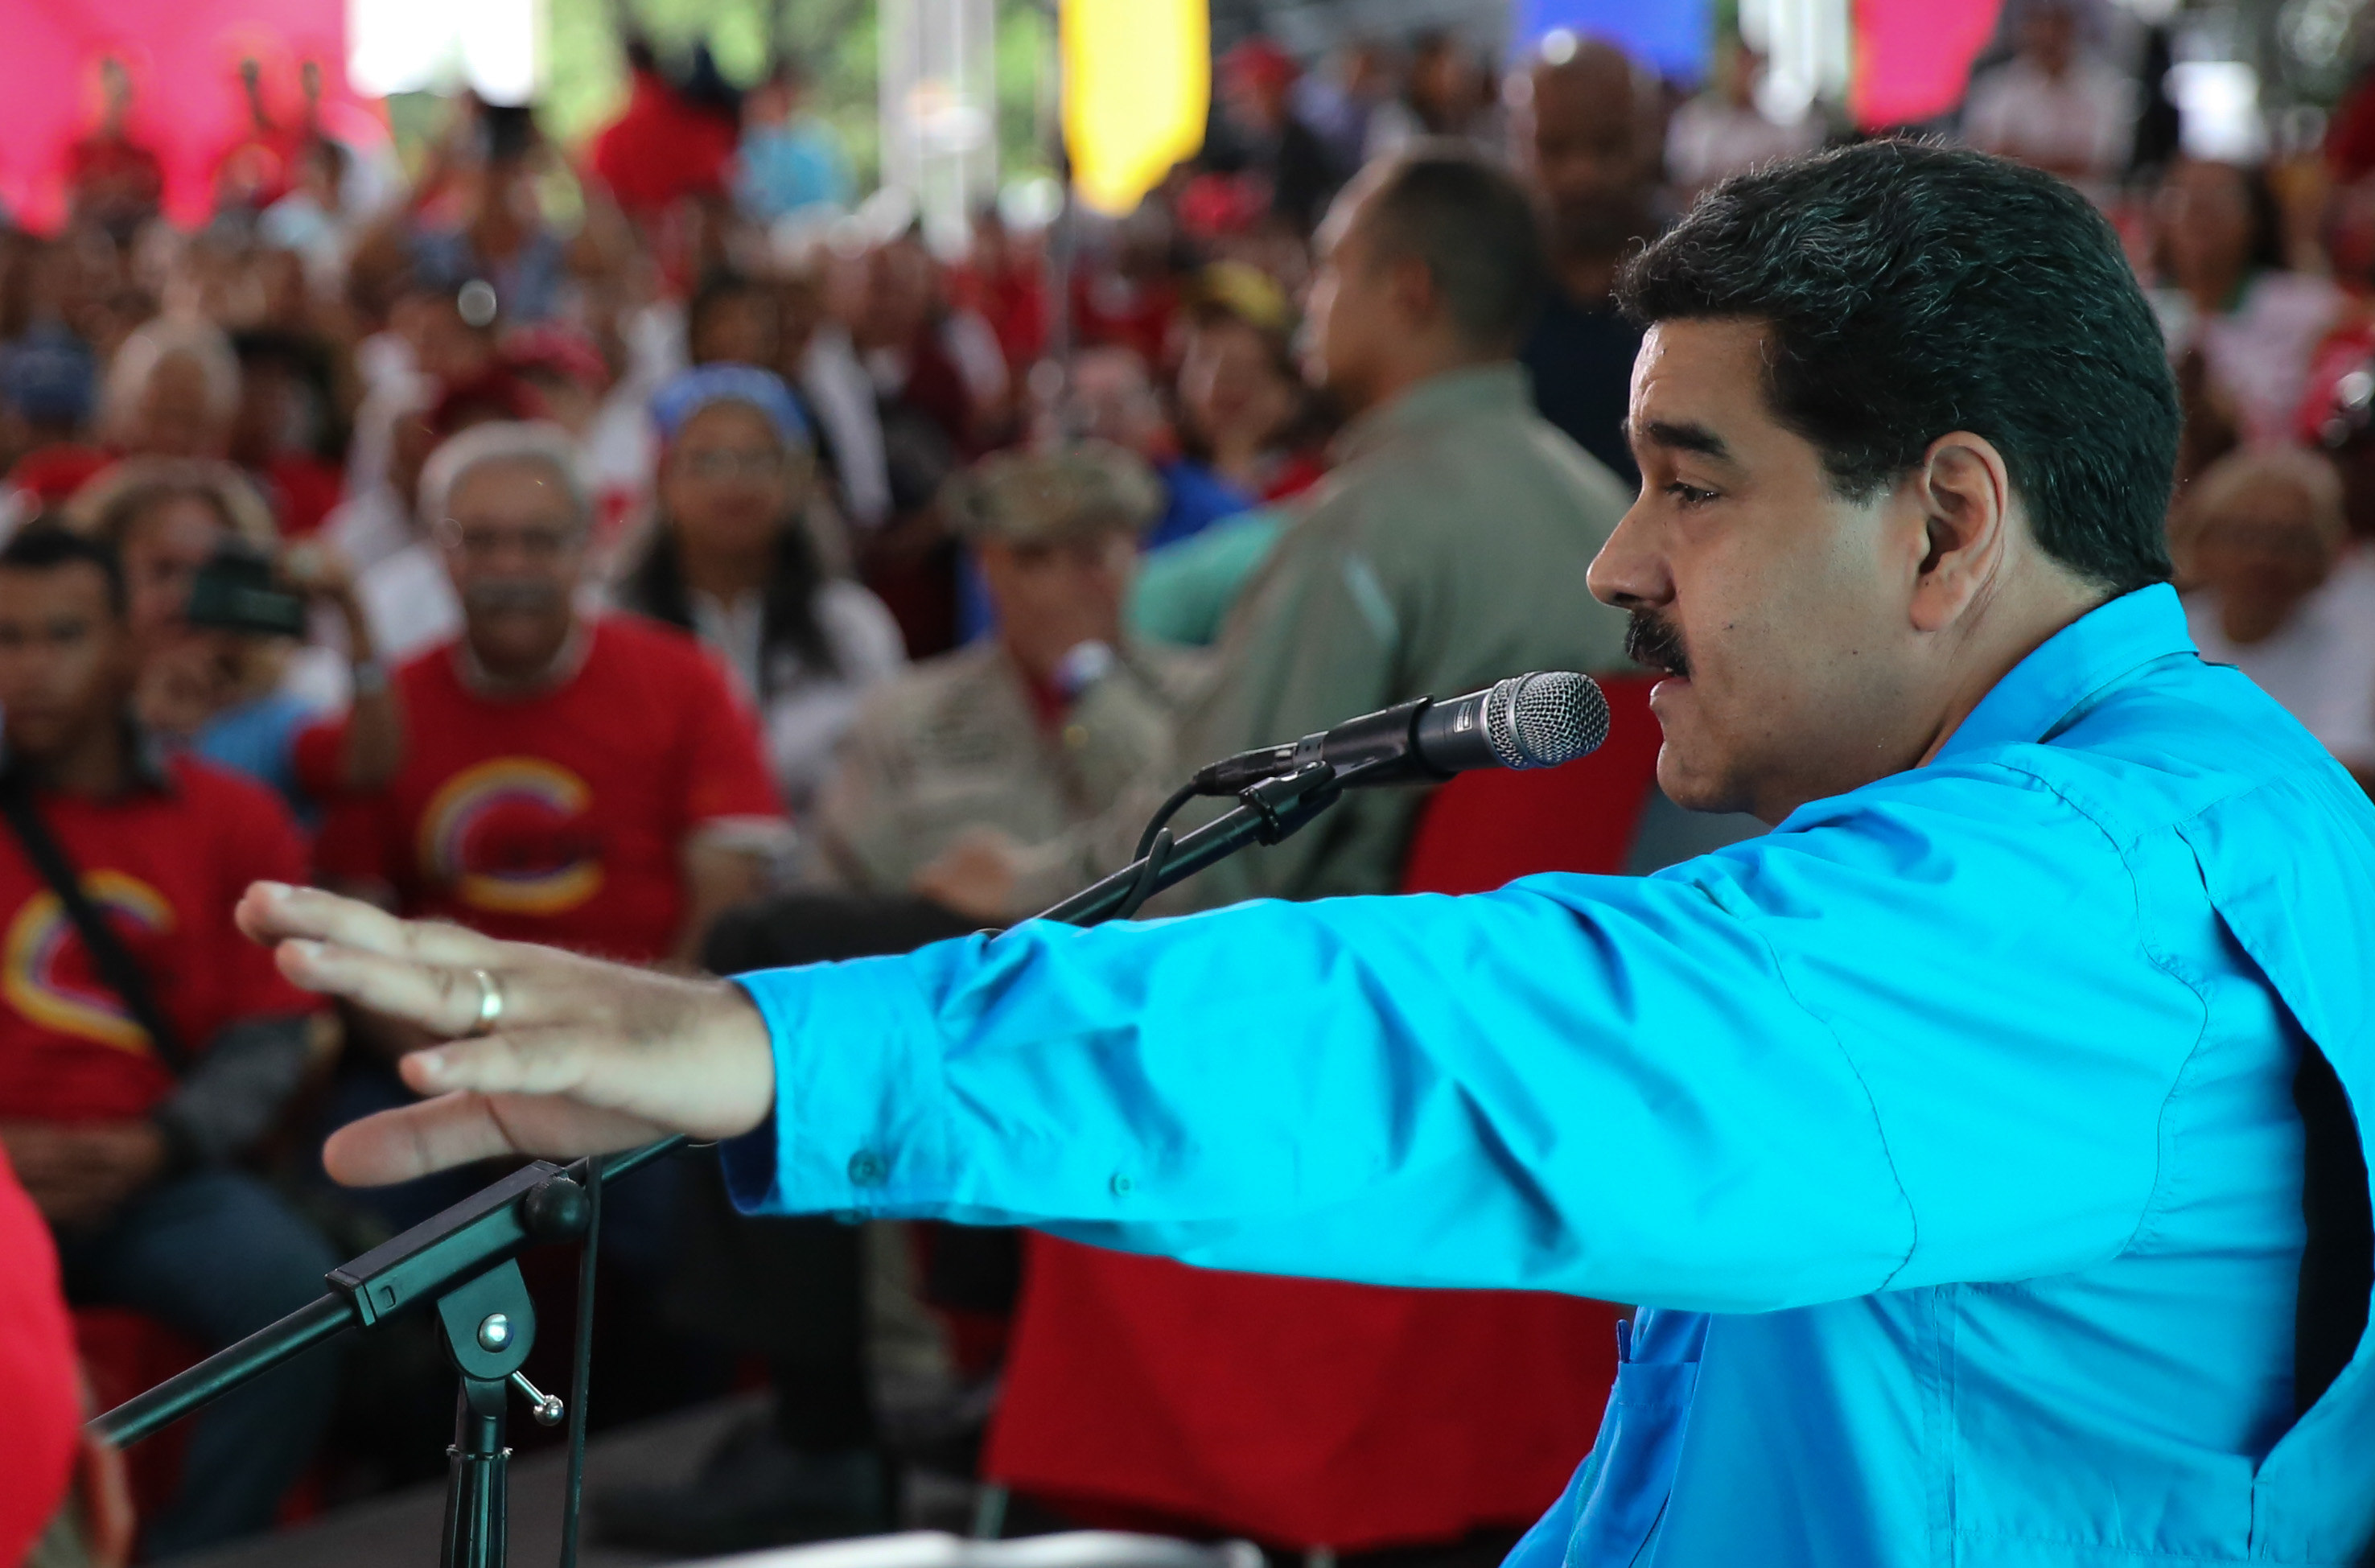  La UE urge a Maduro a convocar elecciones “en los próximos días”